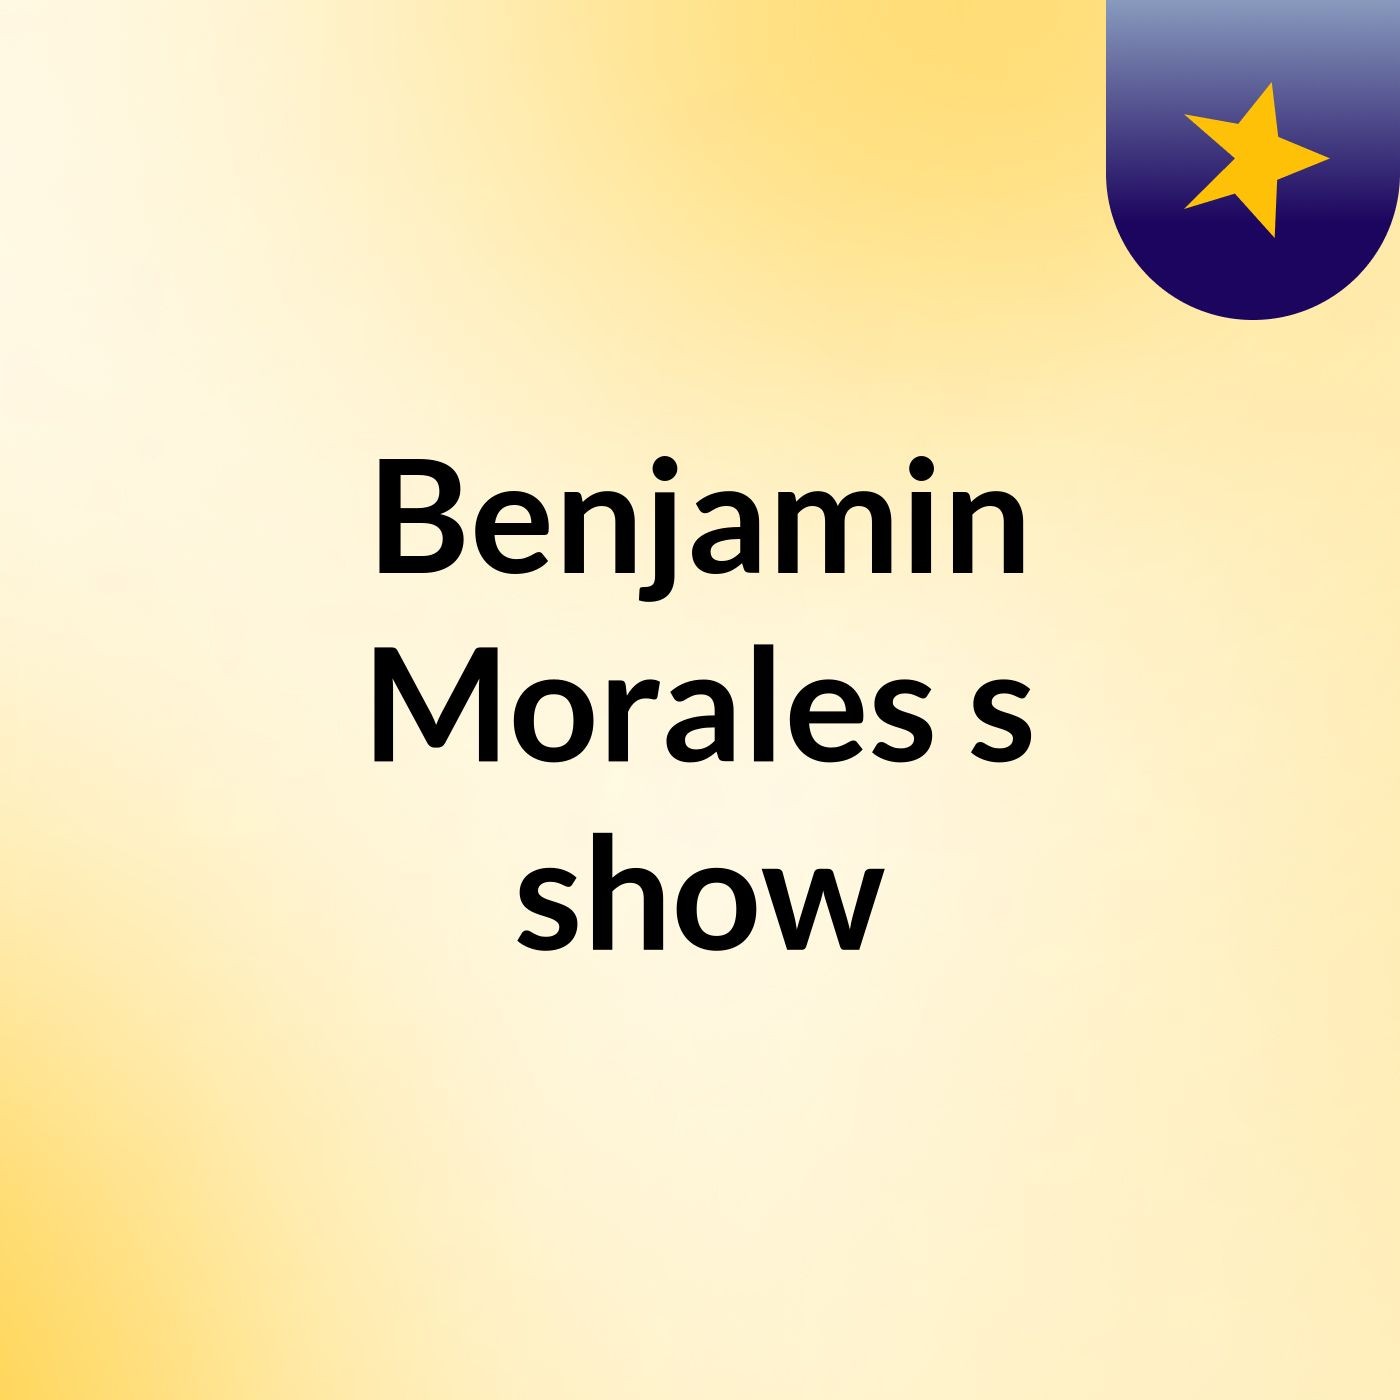 Benjamin Morales's show